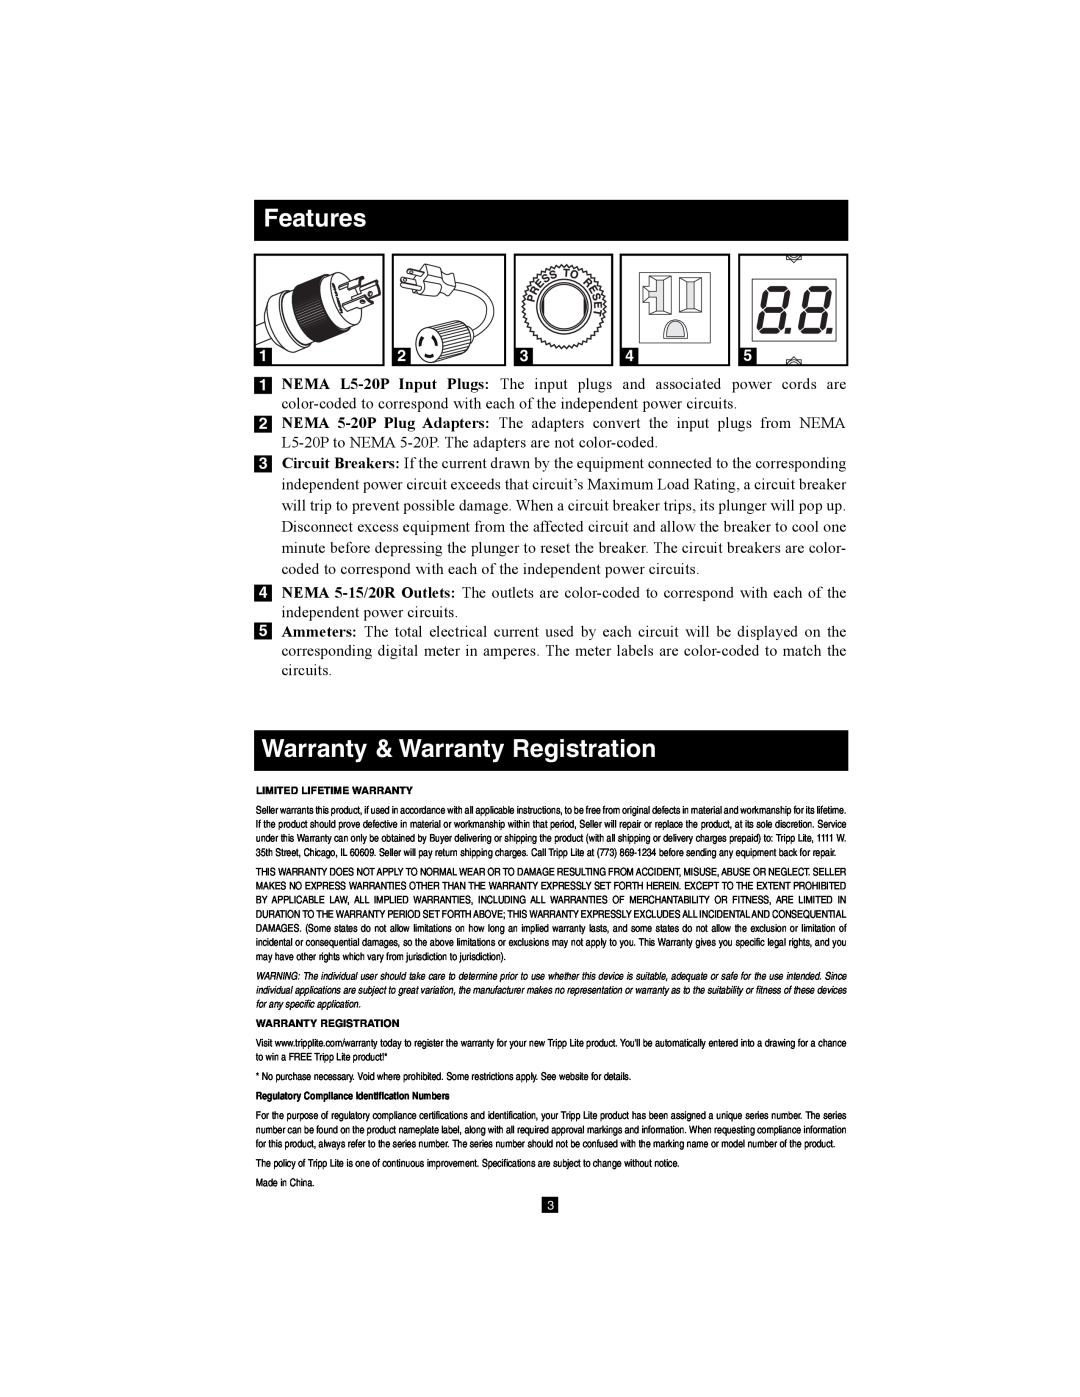 Tripp Lite PDUMV40 owner manual Features, Warranty & Warranty Registration, Limited Lifetime Warranty 